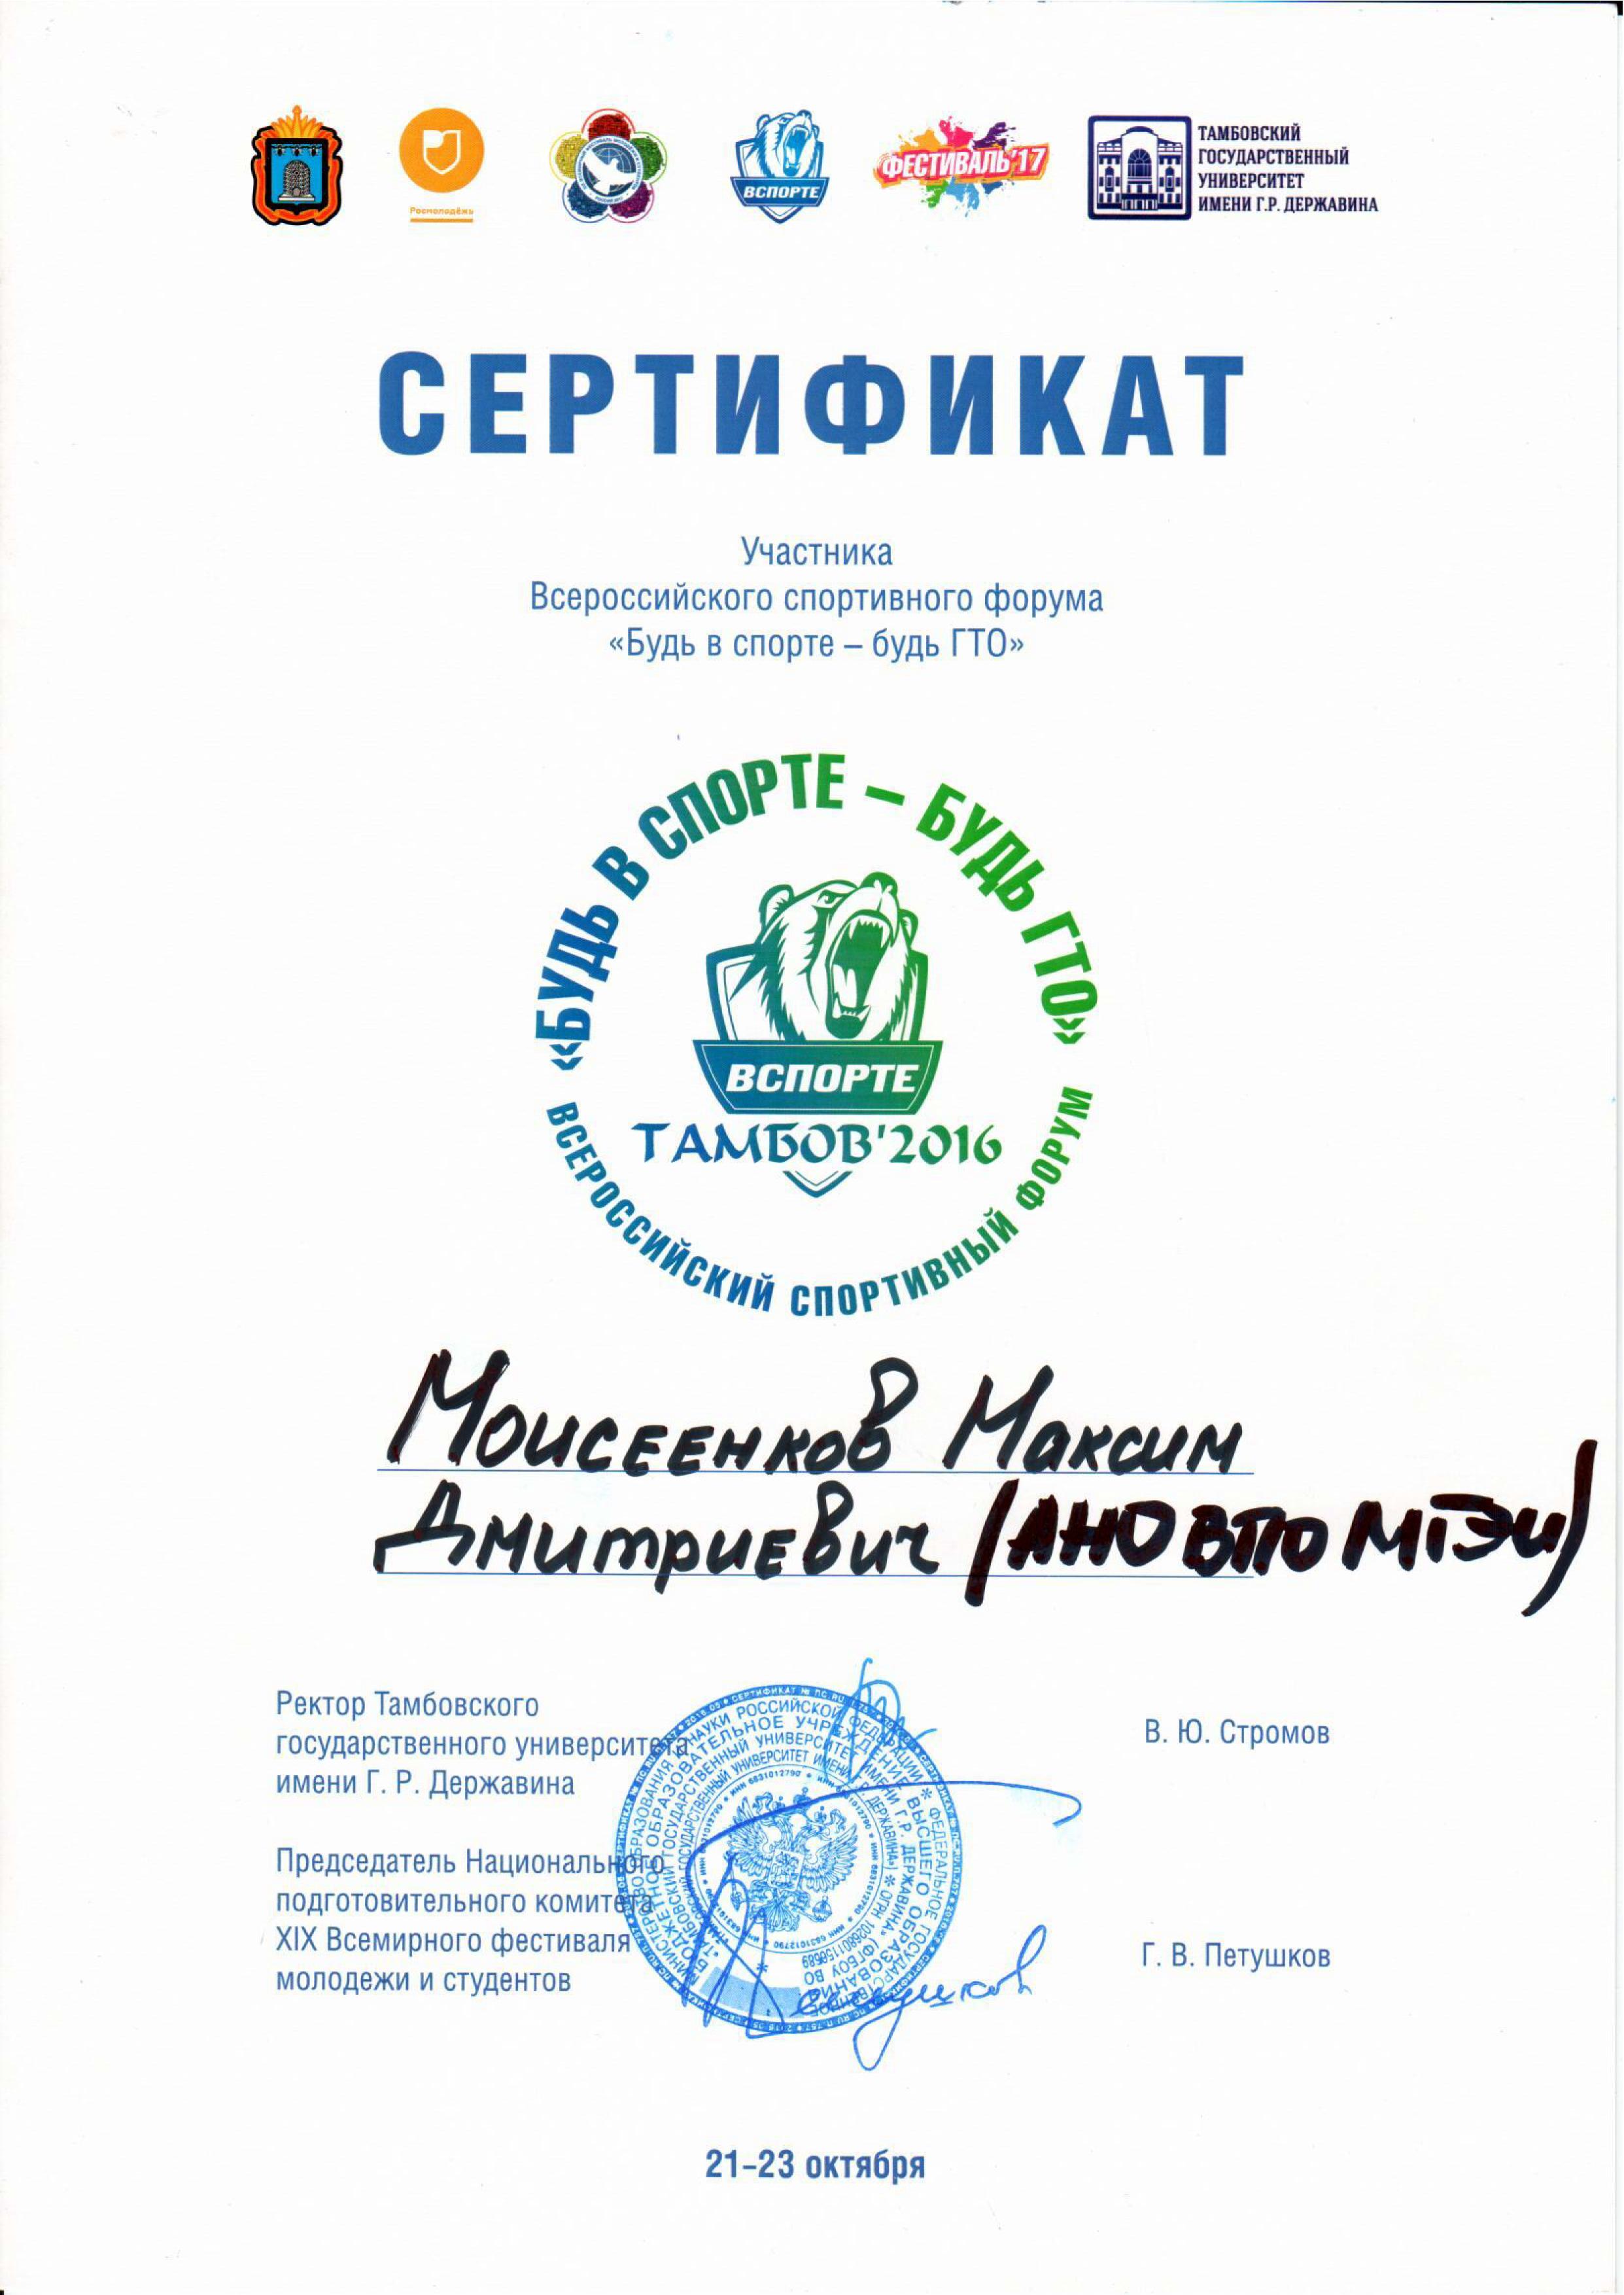 Сертификат участника всероссийского спортивного форума 